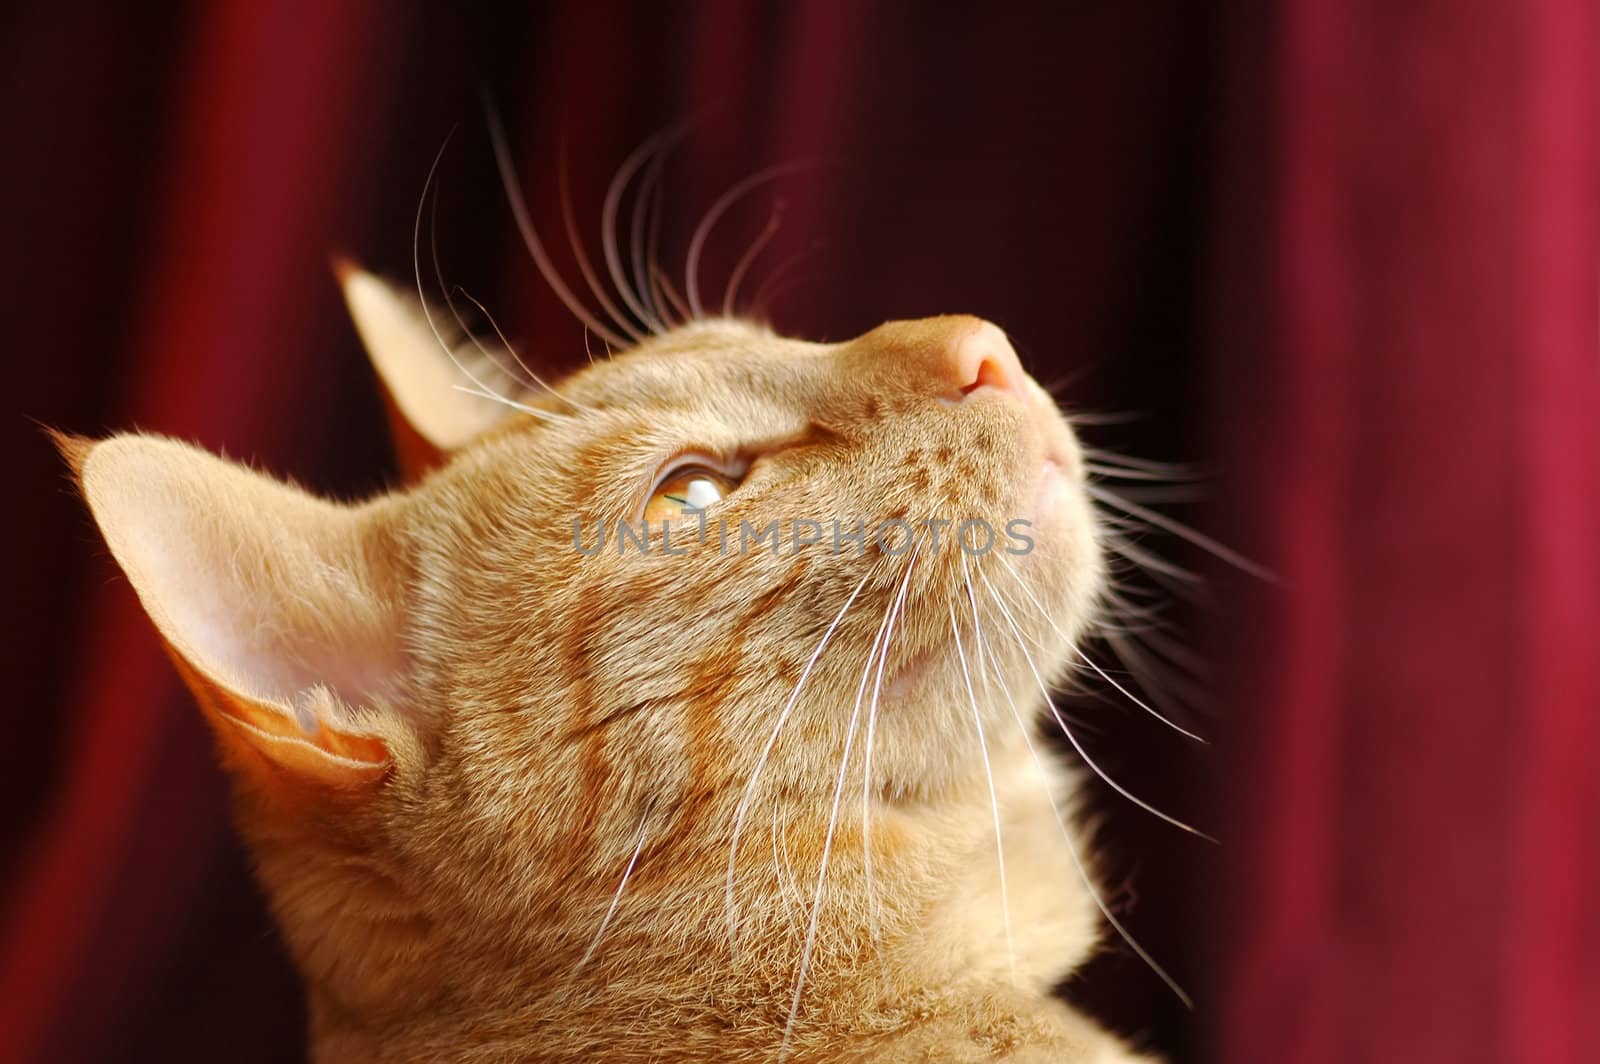 ginger tabby cat portrait